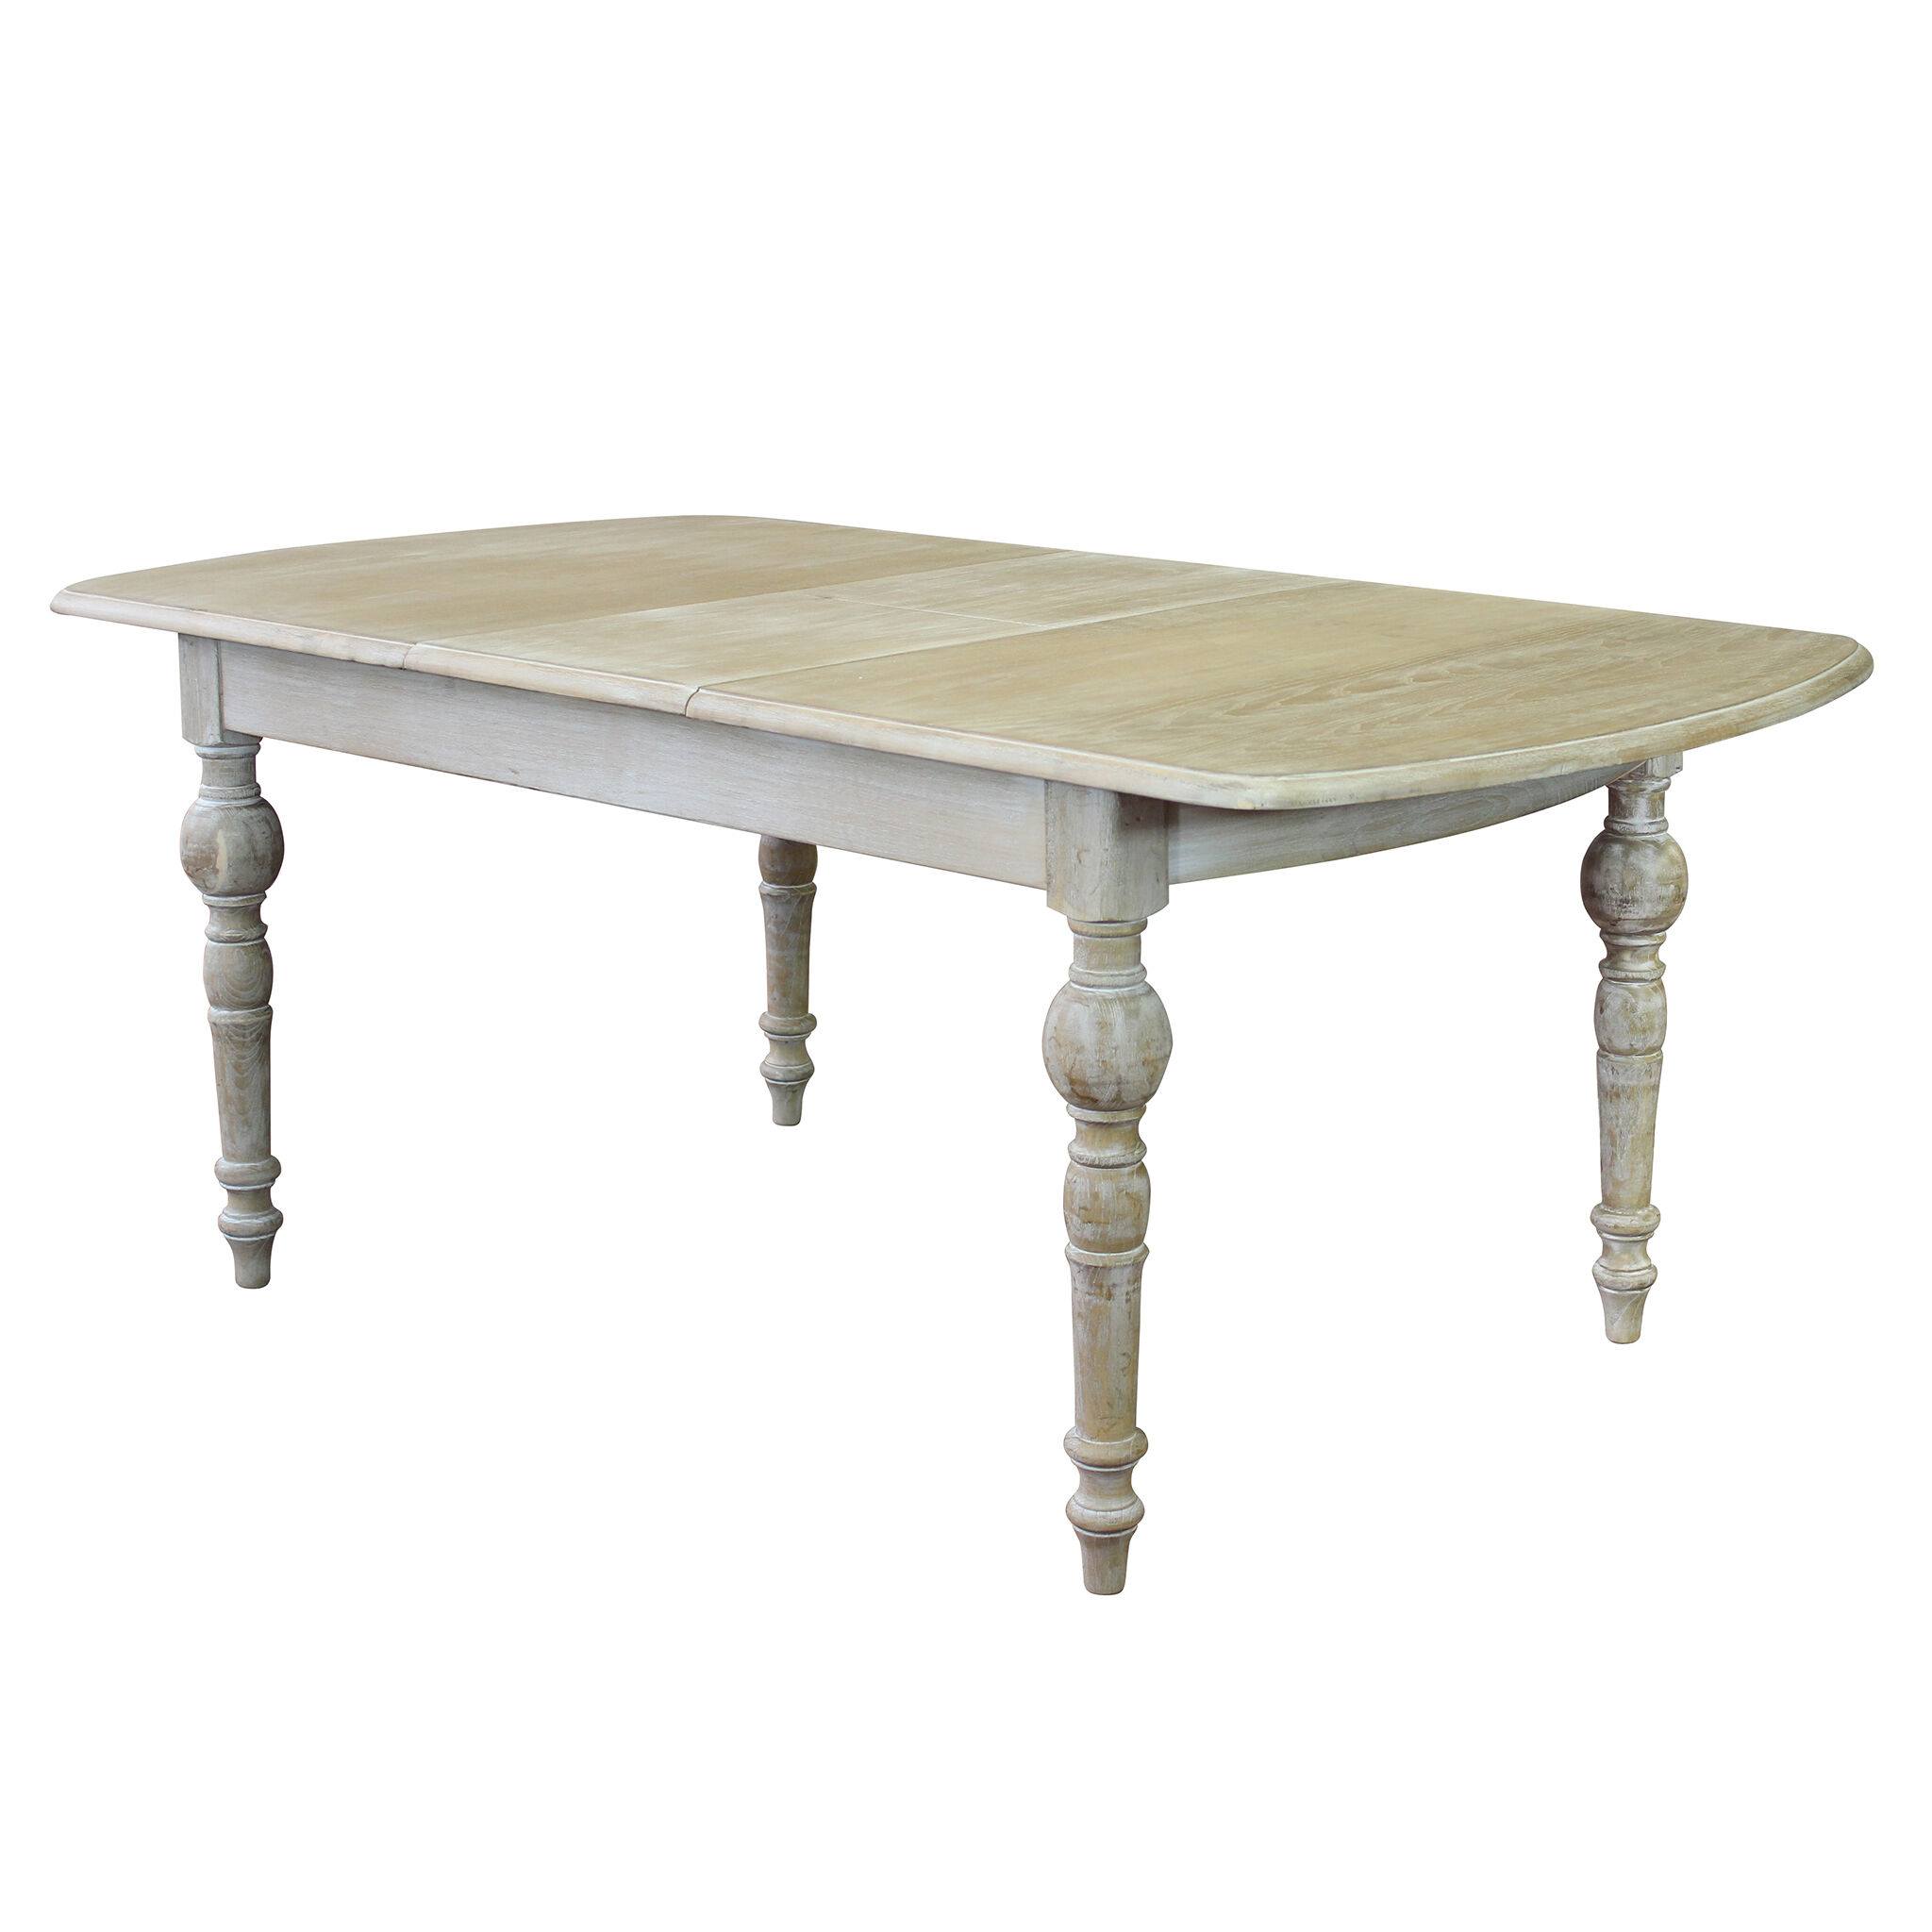 Milani Home tavolo in legno massiccio di design moderno industrial cm 150 x 100 x 75 Marrone 150 x 76 x 100 cm